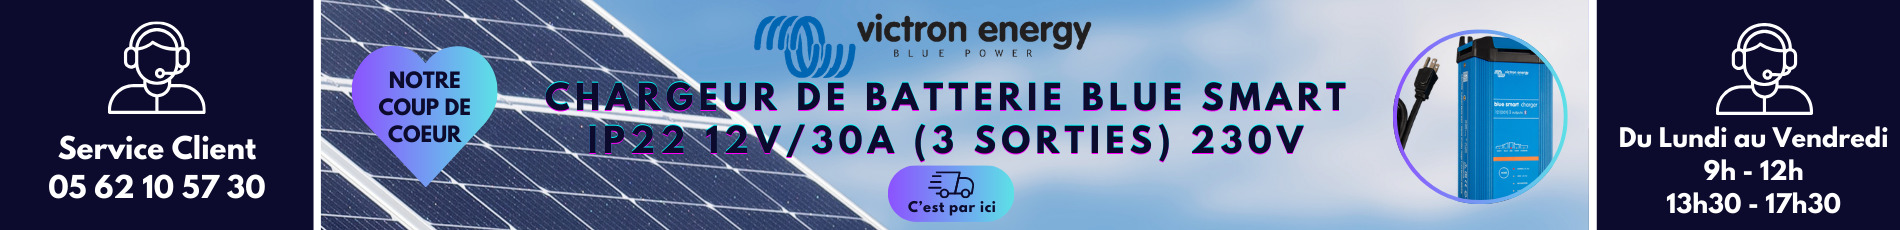 Chargeur de Batterie Blue Smart IP22 12/30(1) - Victron